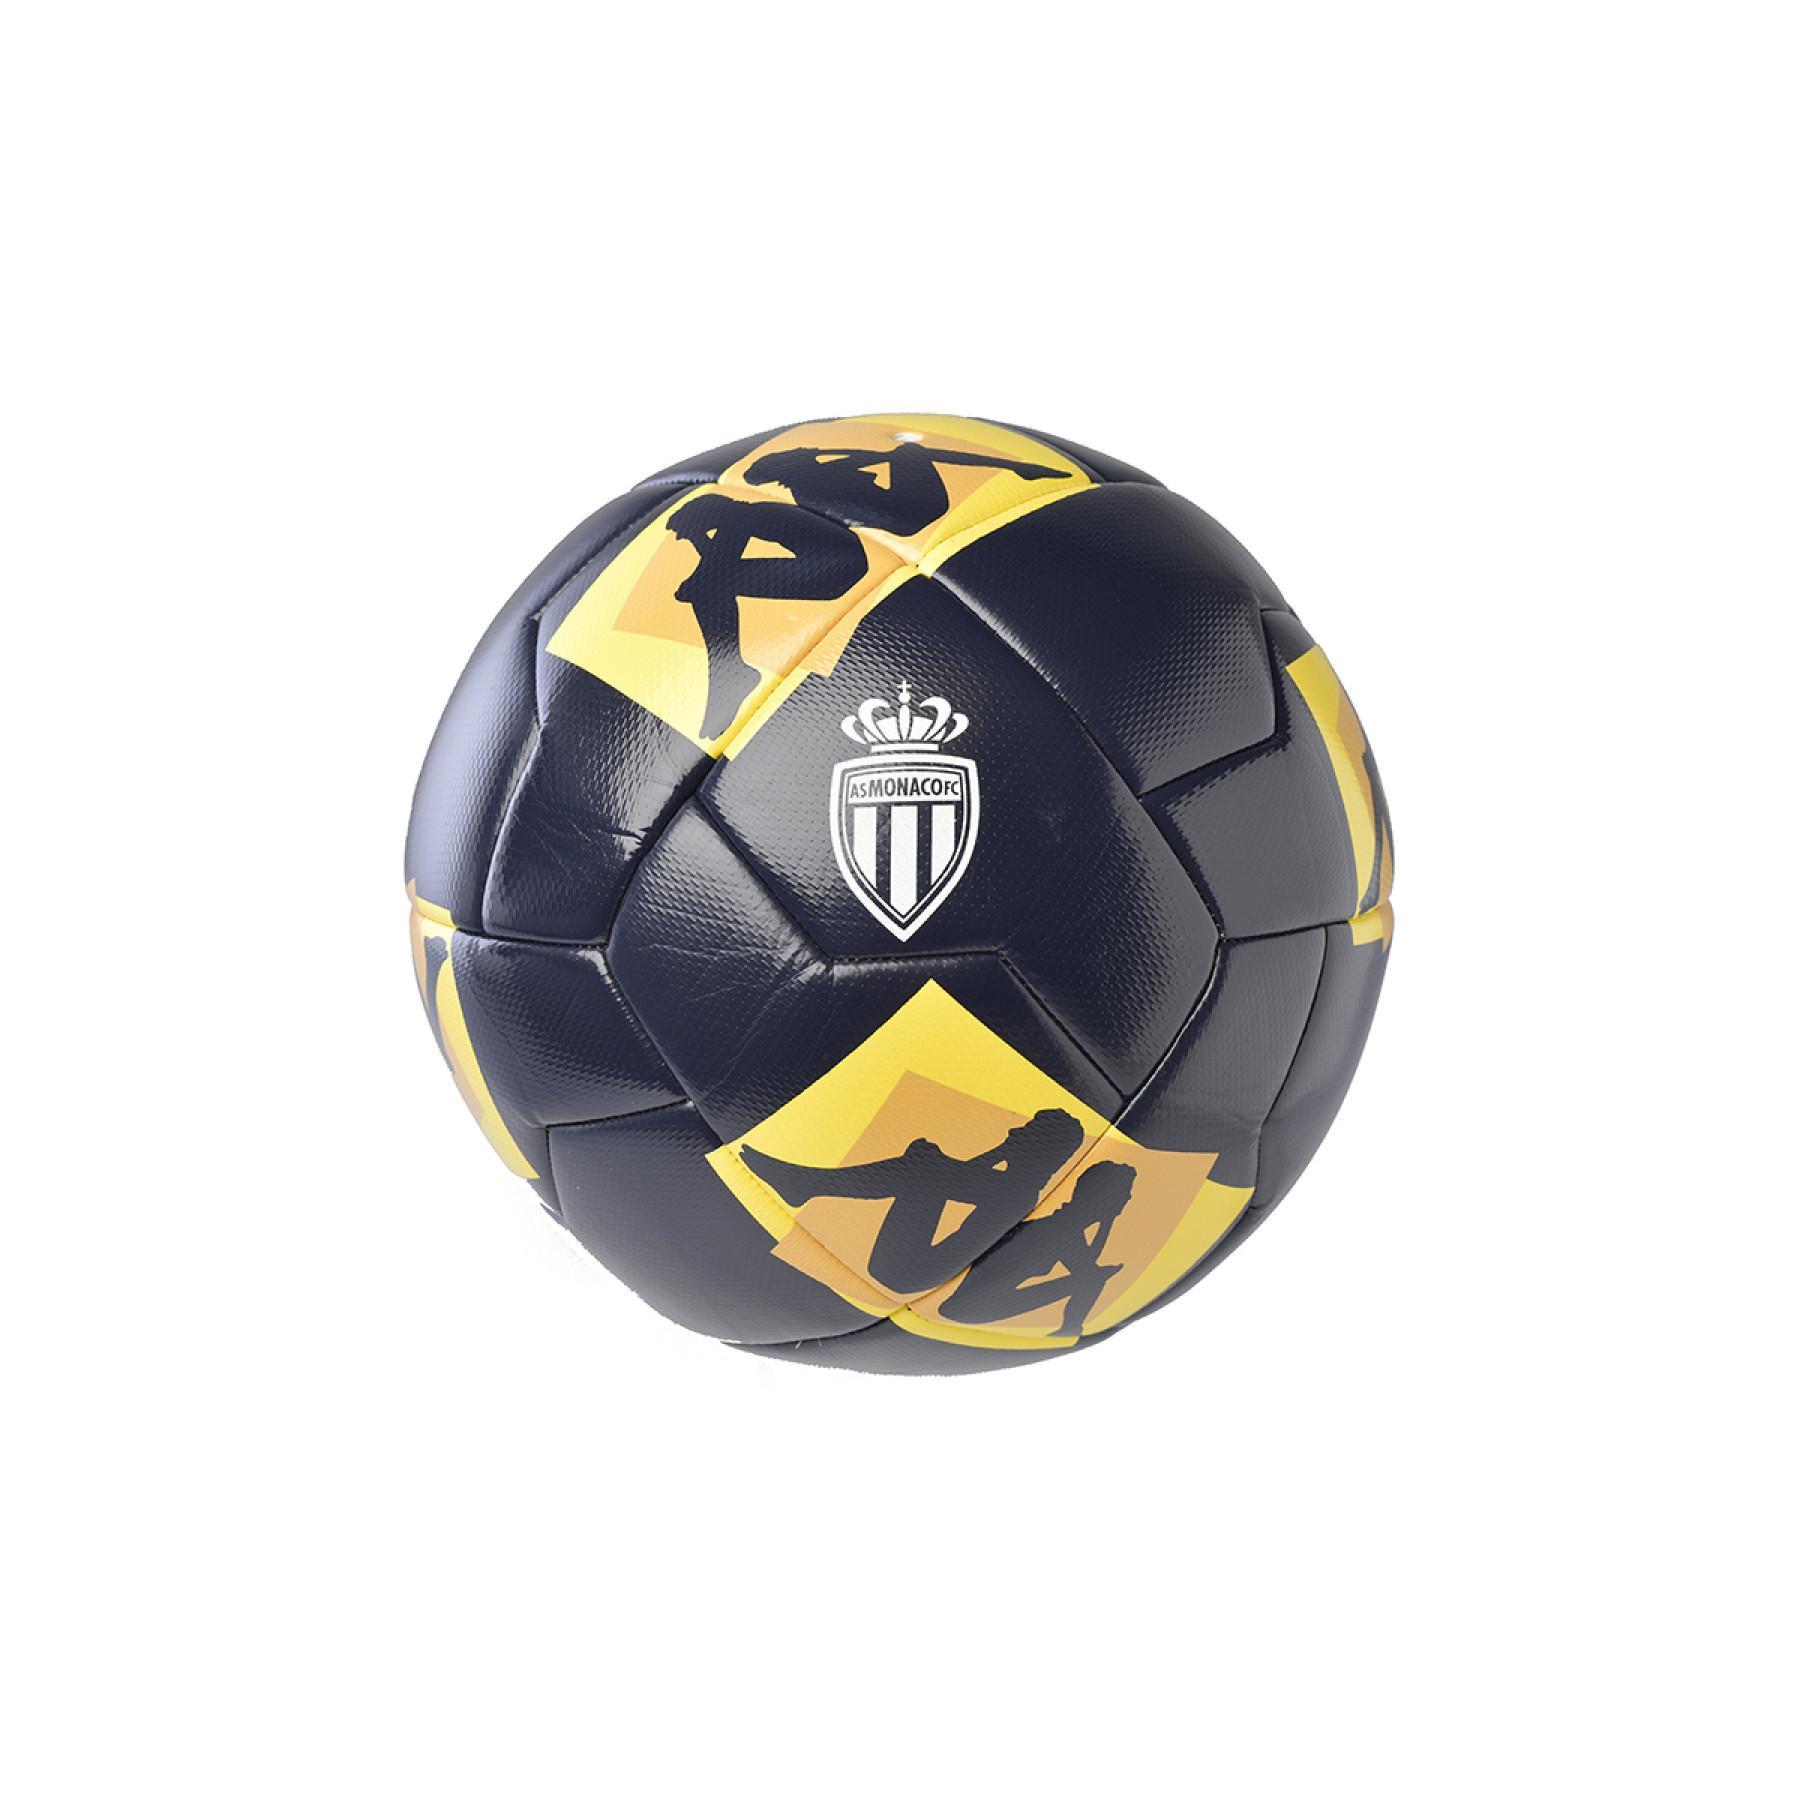 Wedstrijdbal AS Monaco 2020/21 20.3G